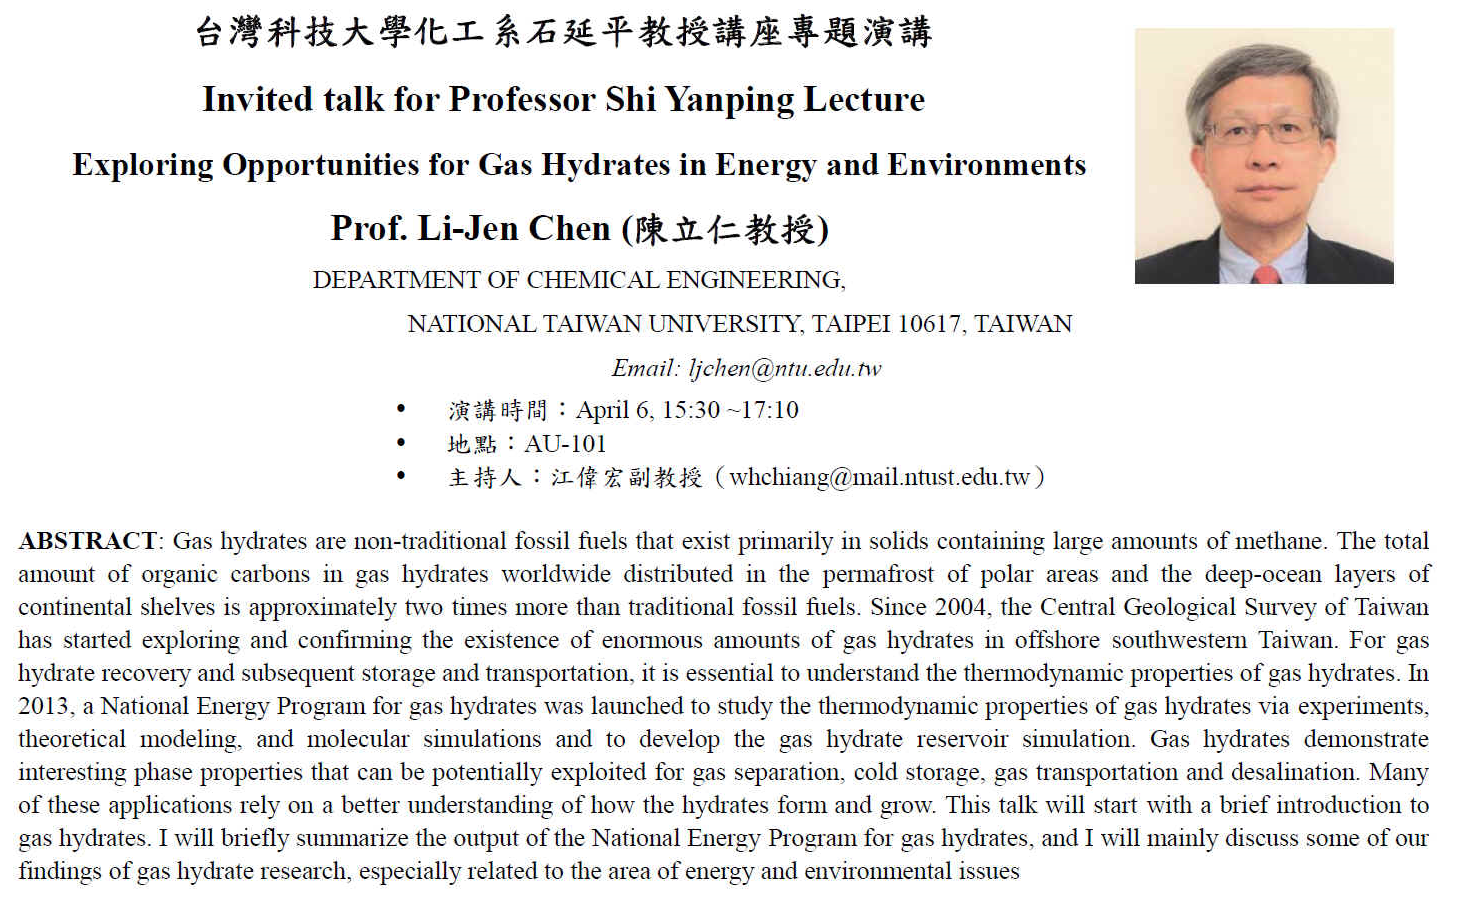 台灣科技大學化工系石延平教授講座專題演講